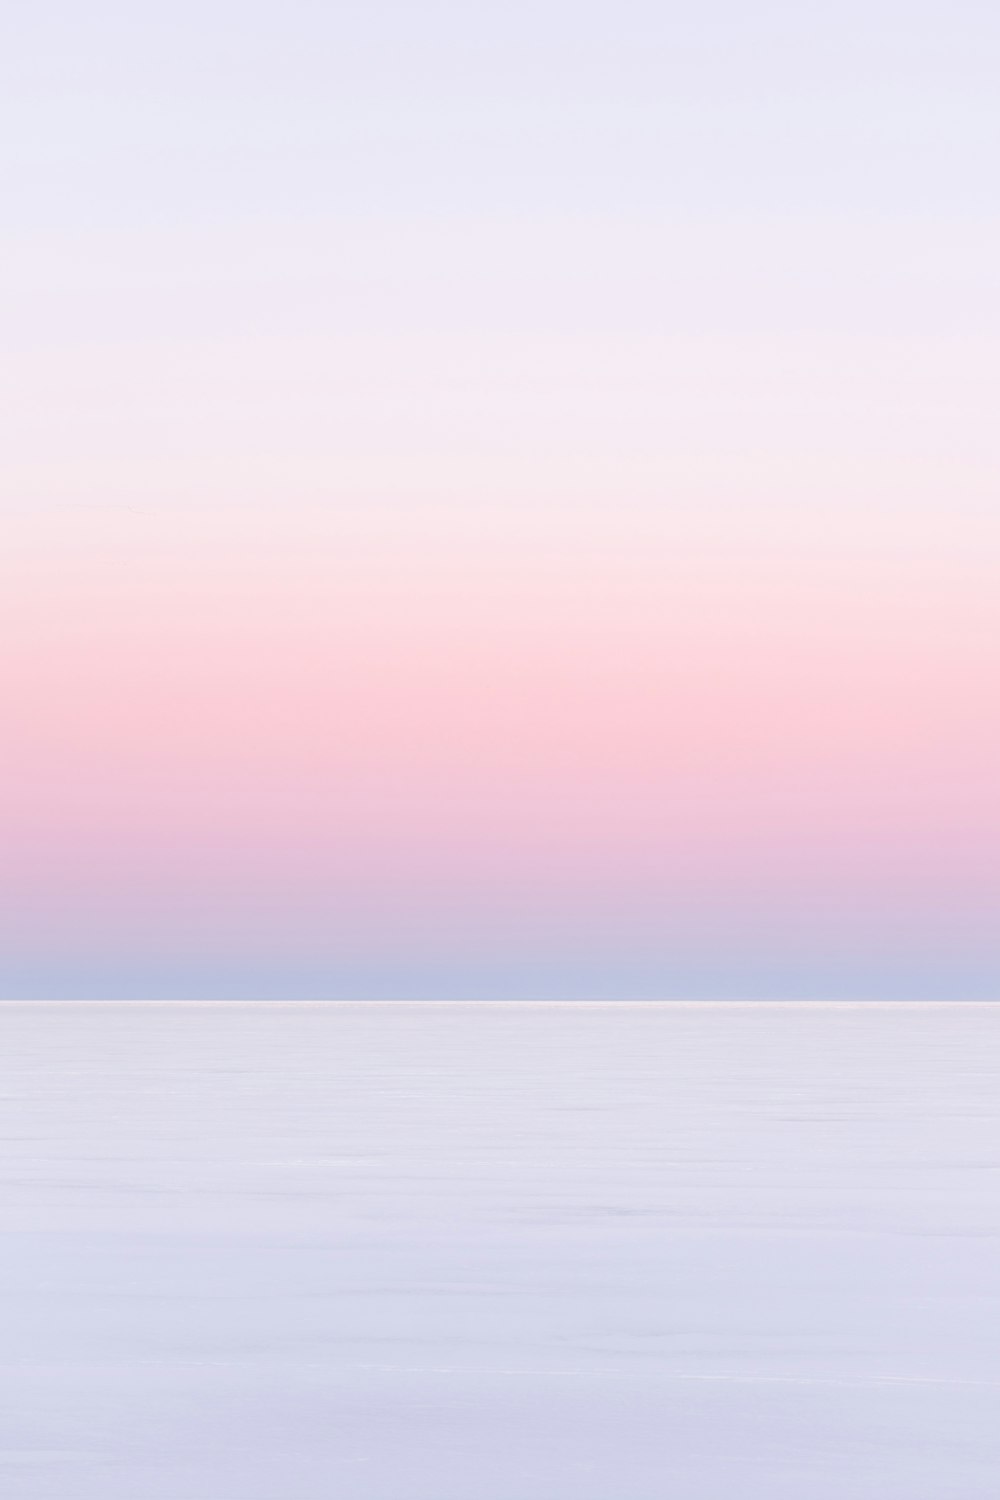 海の上の白とピンクの空の写真 Unsplashの無料写真